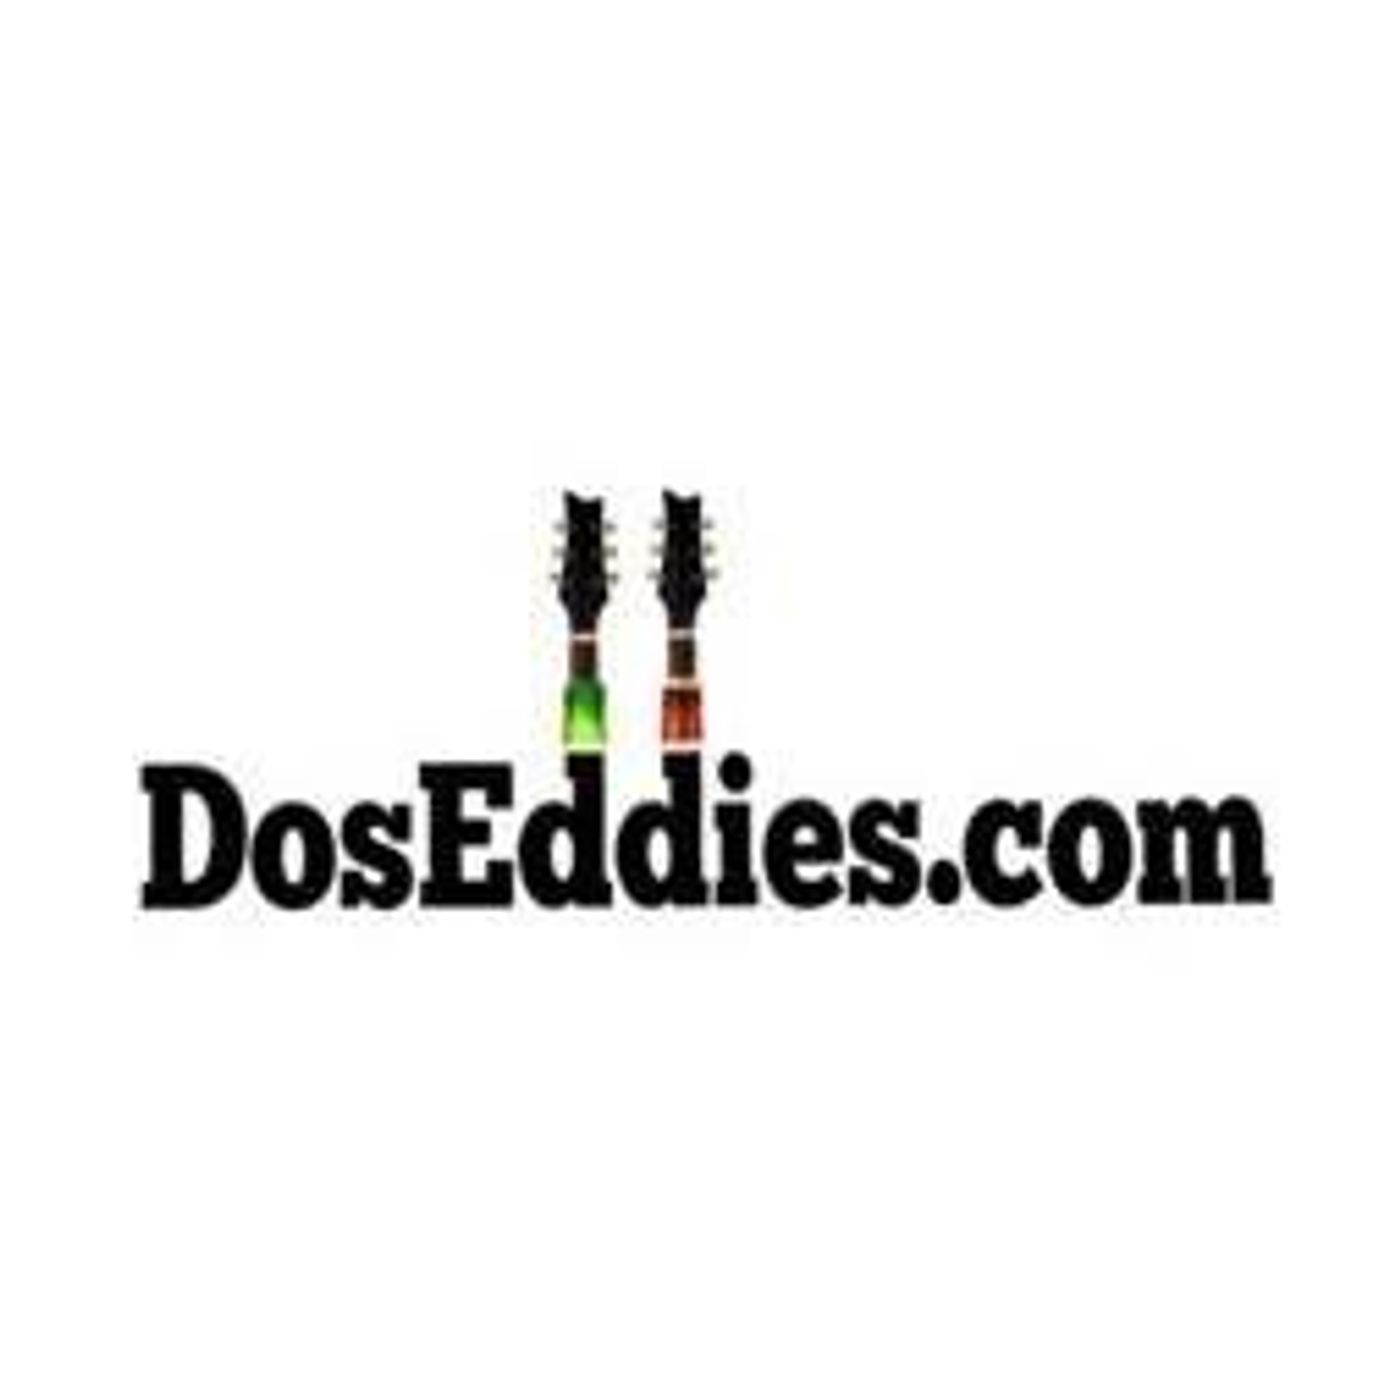 The Daily Dos (DosEddies.com)